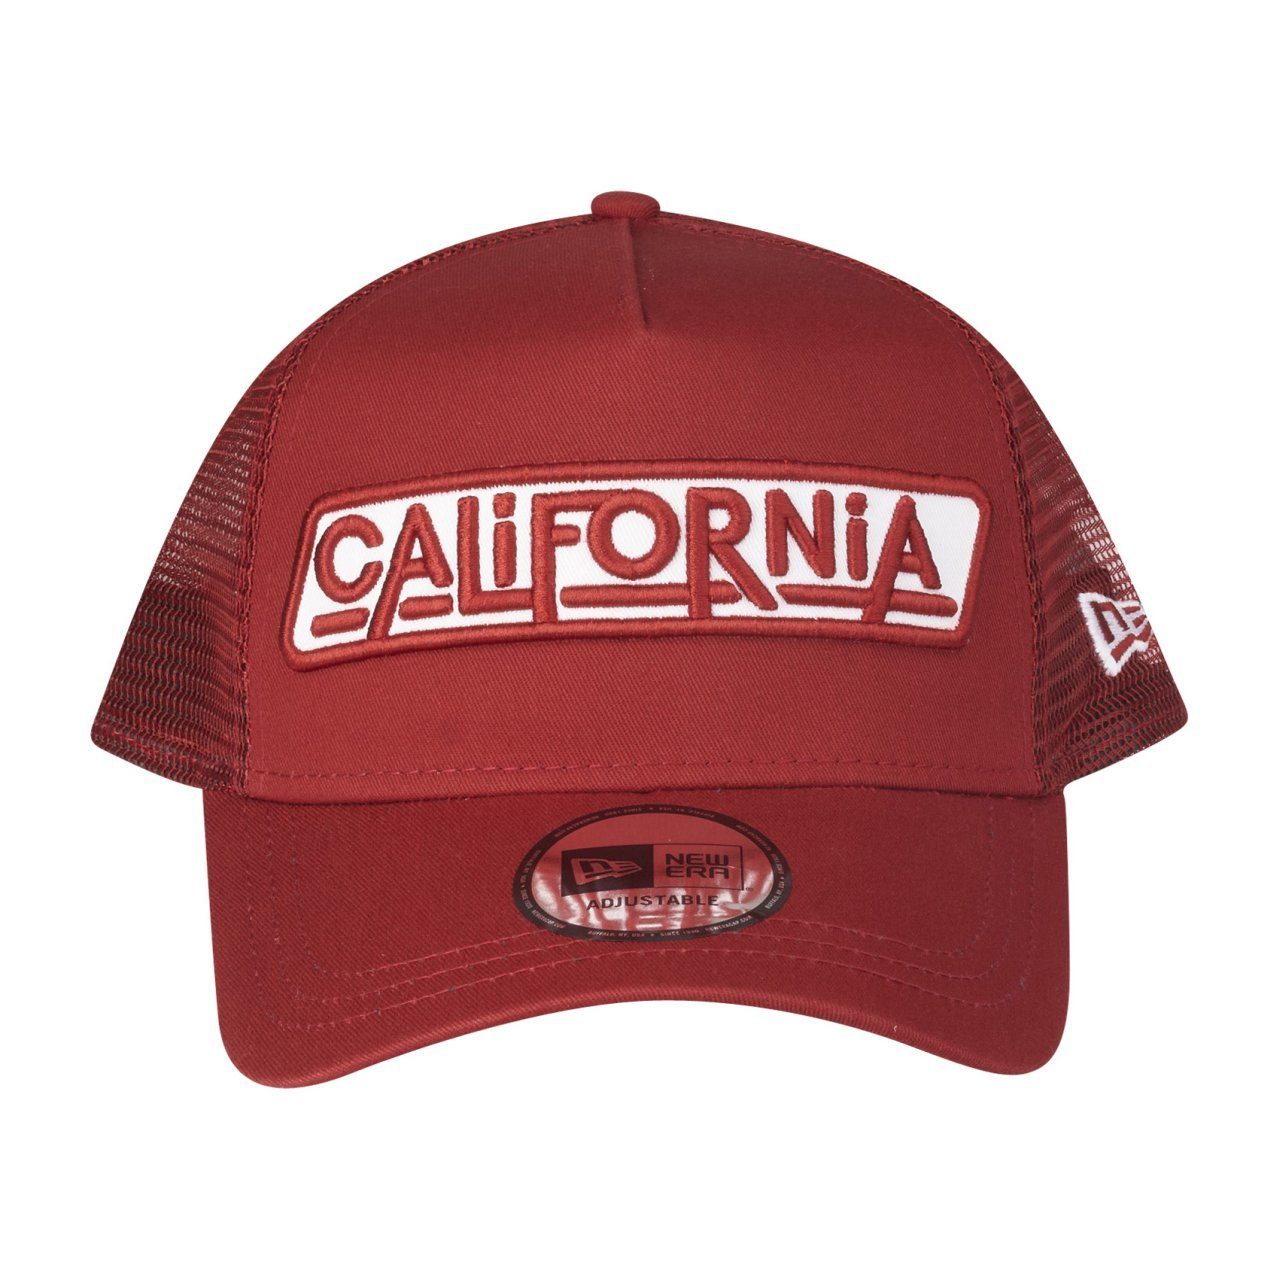 AFrame California New Trucker Trucker USA Cap Era